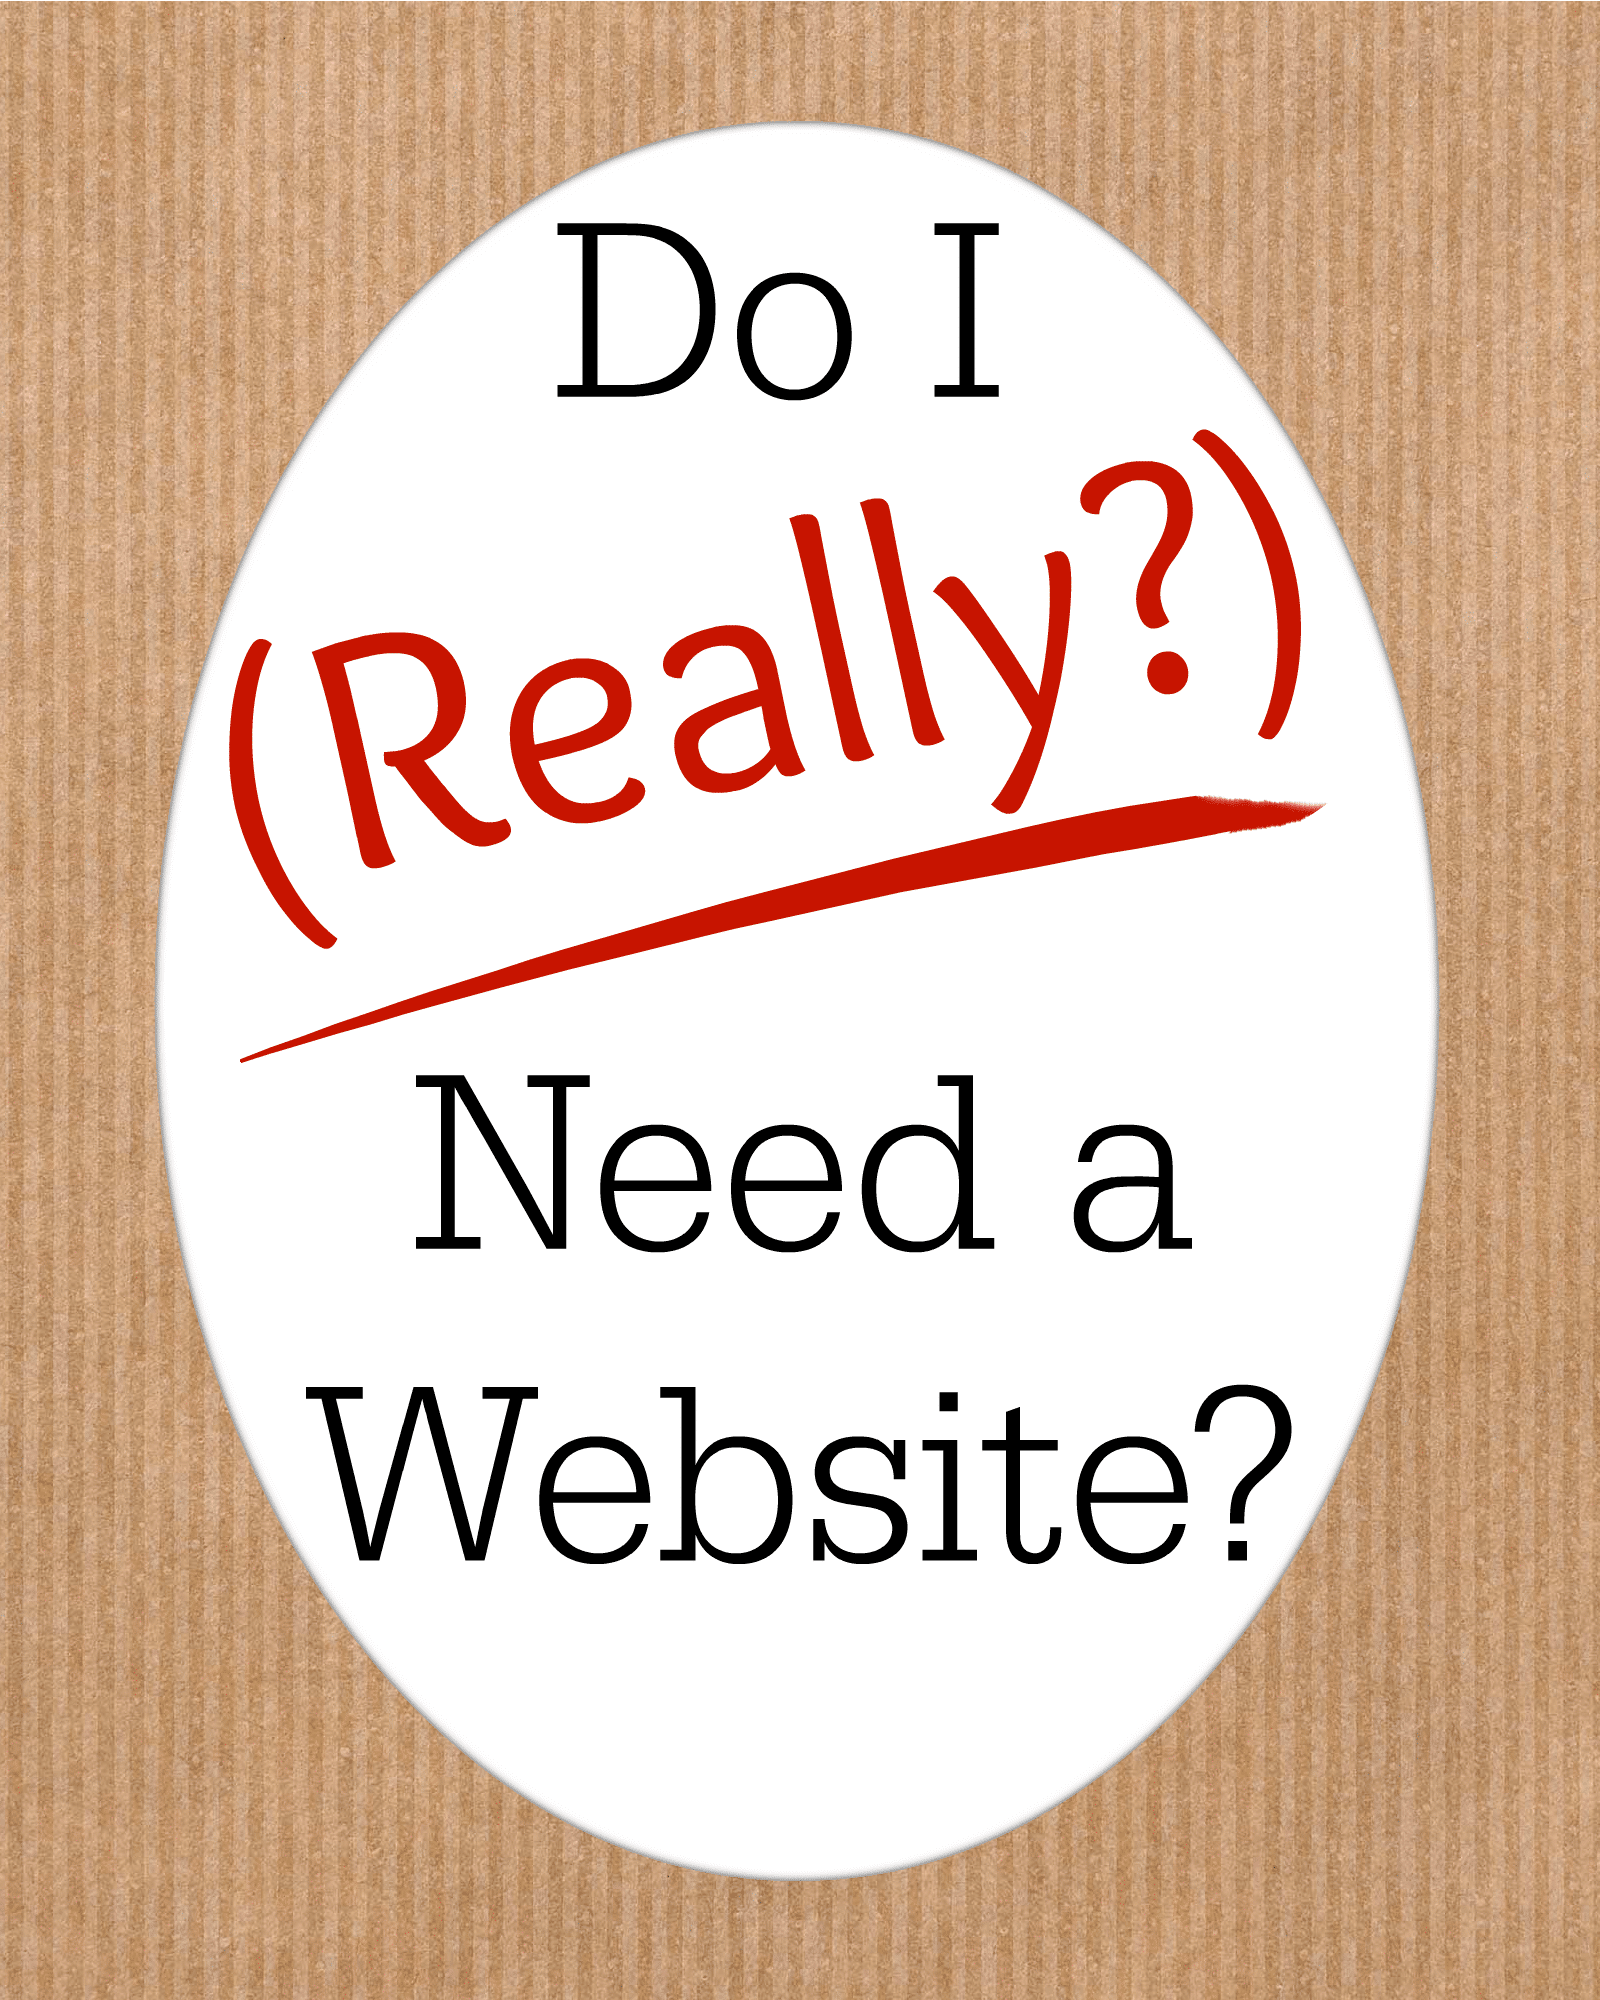 Do i really need a website